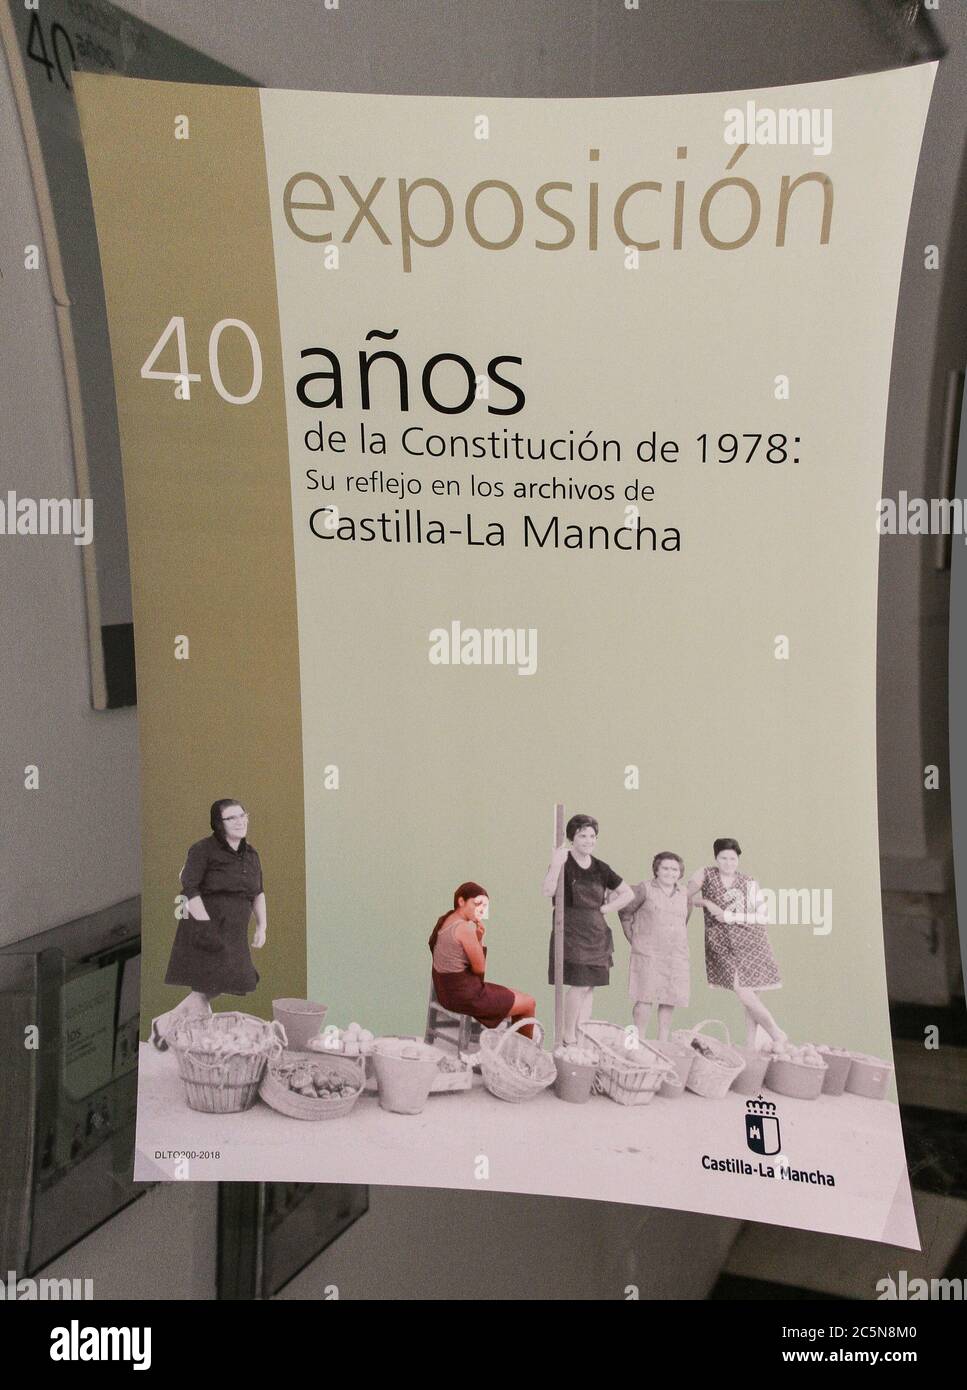 Toledo, Castilla-la Mancha, Spagna, Europa. Mostra dedicata al 40° anniversario della Costituzione spagnola 1978-2018. Il poster all'ingresso. Foto Stock